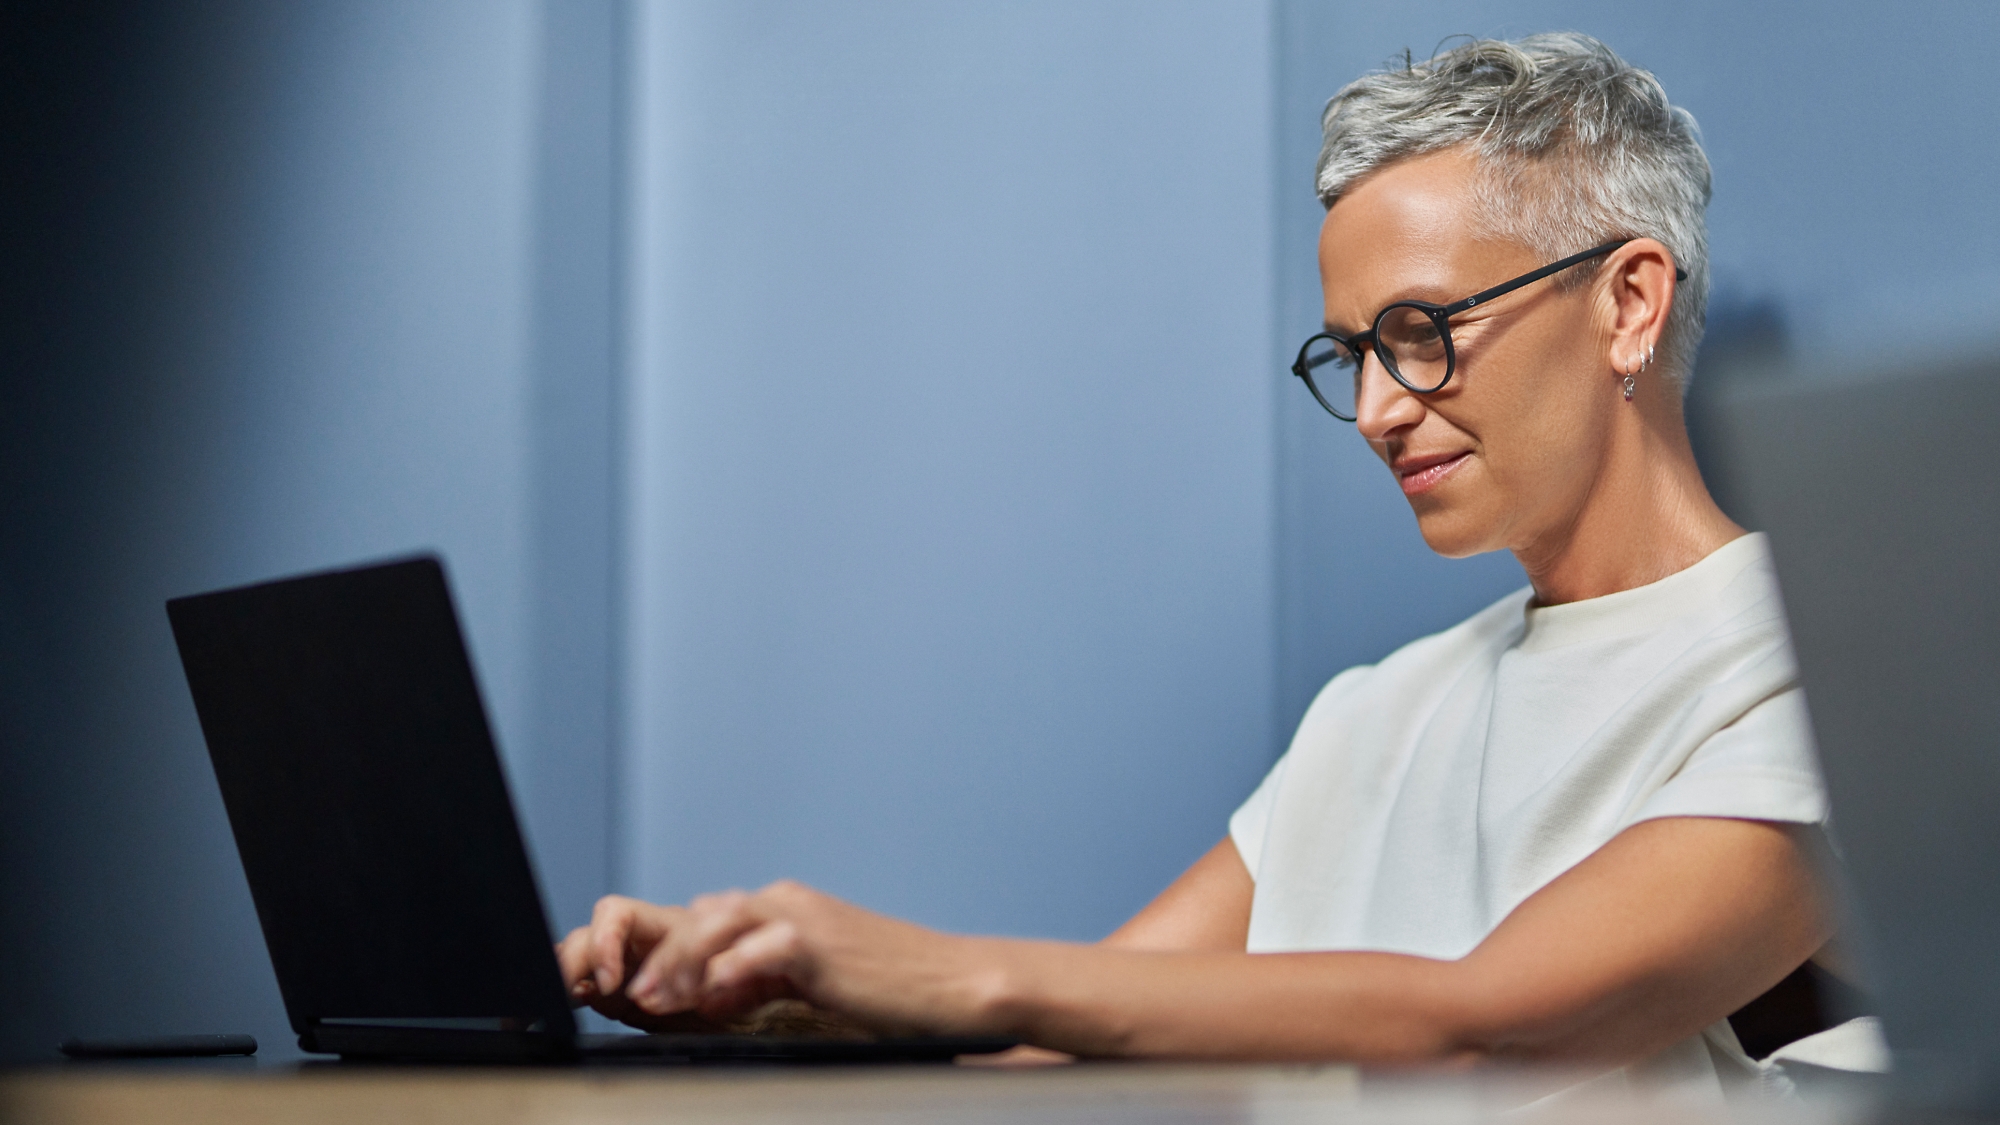 Dojrzała kobieta z krótkimi siwymi włosami uśmiechnięta i pracująca na laptopie w nowoczesnym biurze.